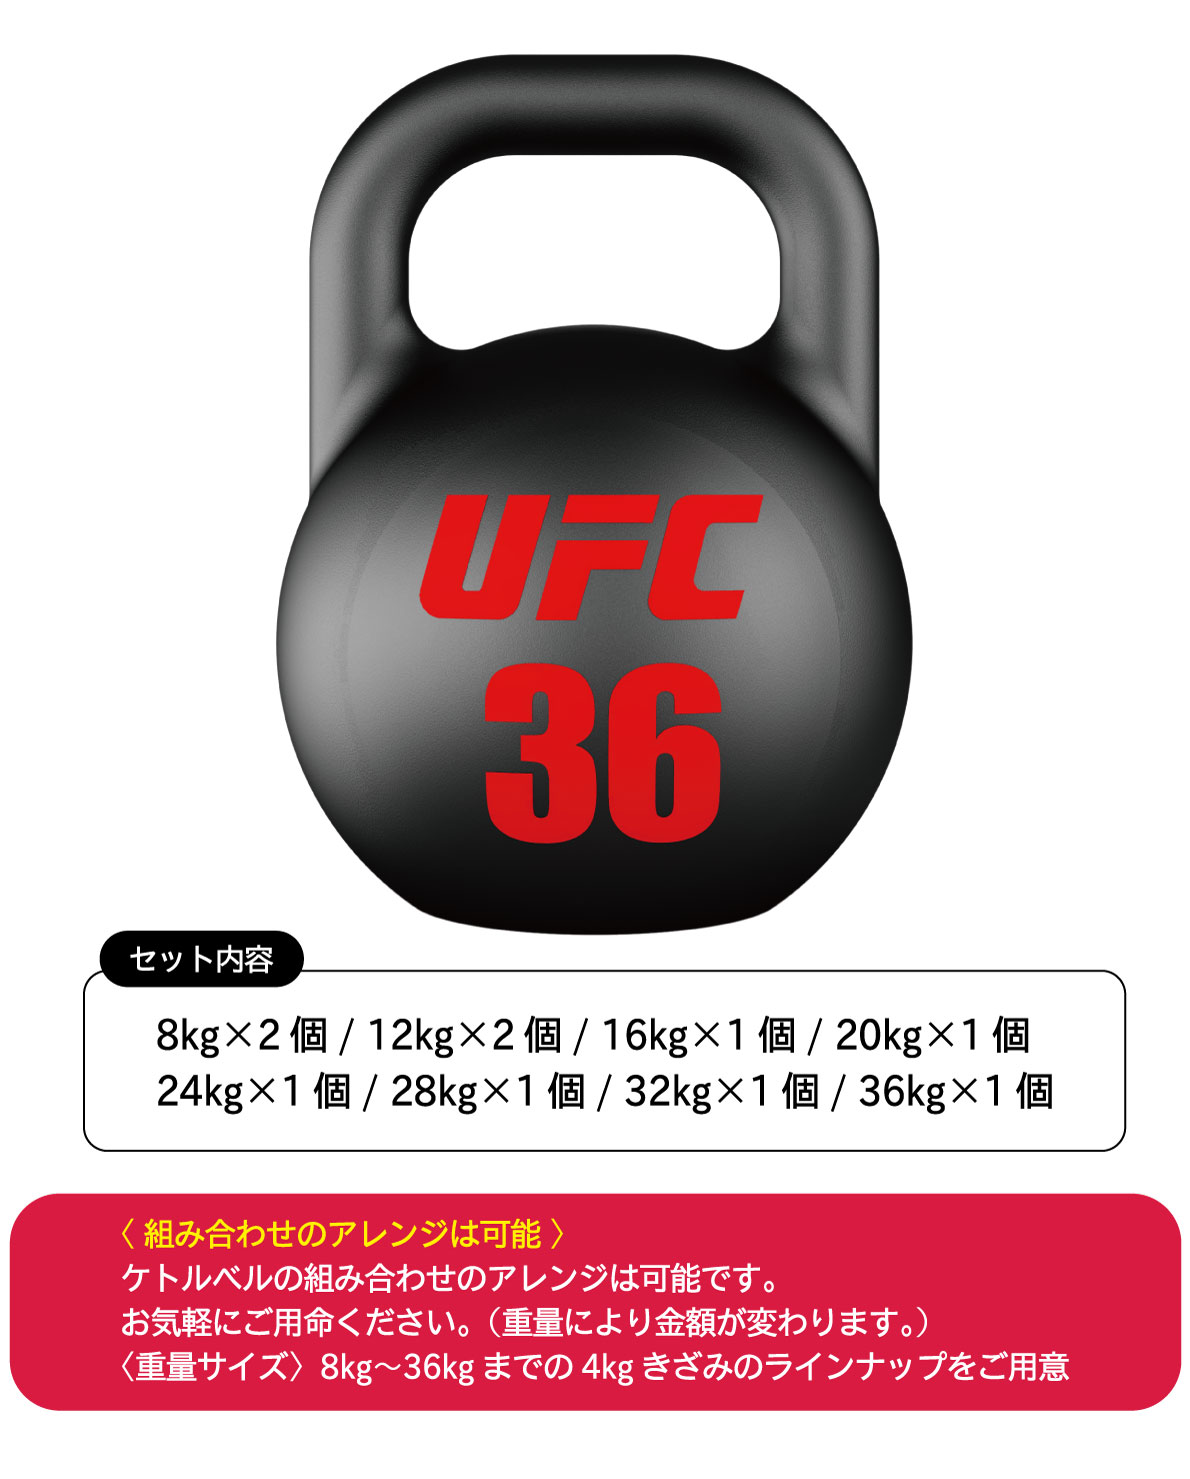 ウレタンケトルベル／ダンベルの10個セット（8kg-36kg）【ダンベル 鉄アレイ バーベル】〈業務用〉《総合格闘技UFCオフィシャル》【筋トレ  ボディメイク 肉体改造】-アイフィットネスショップ